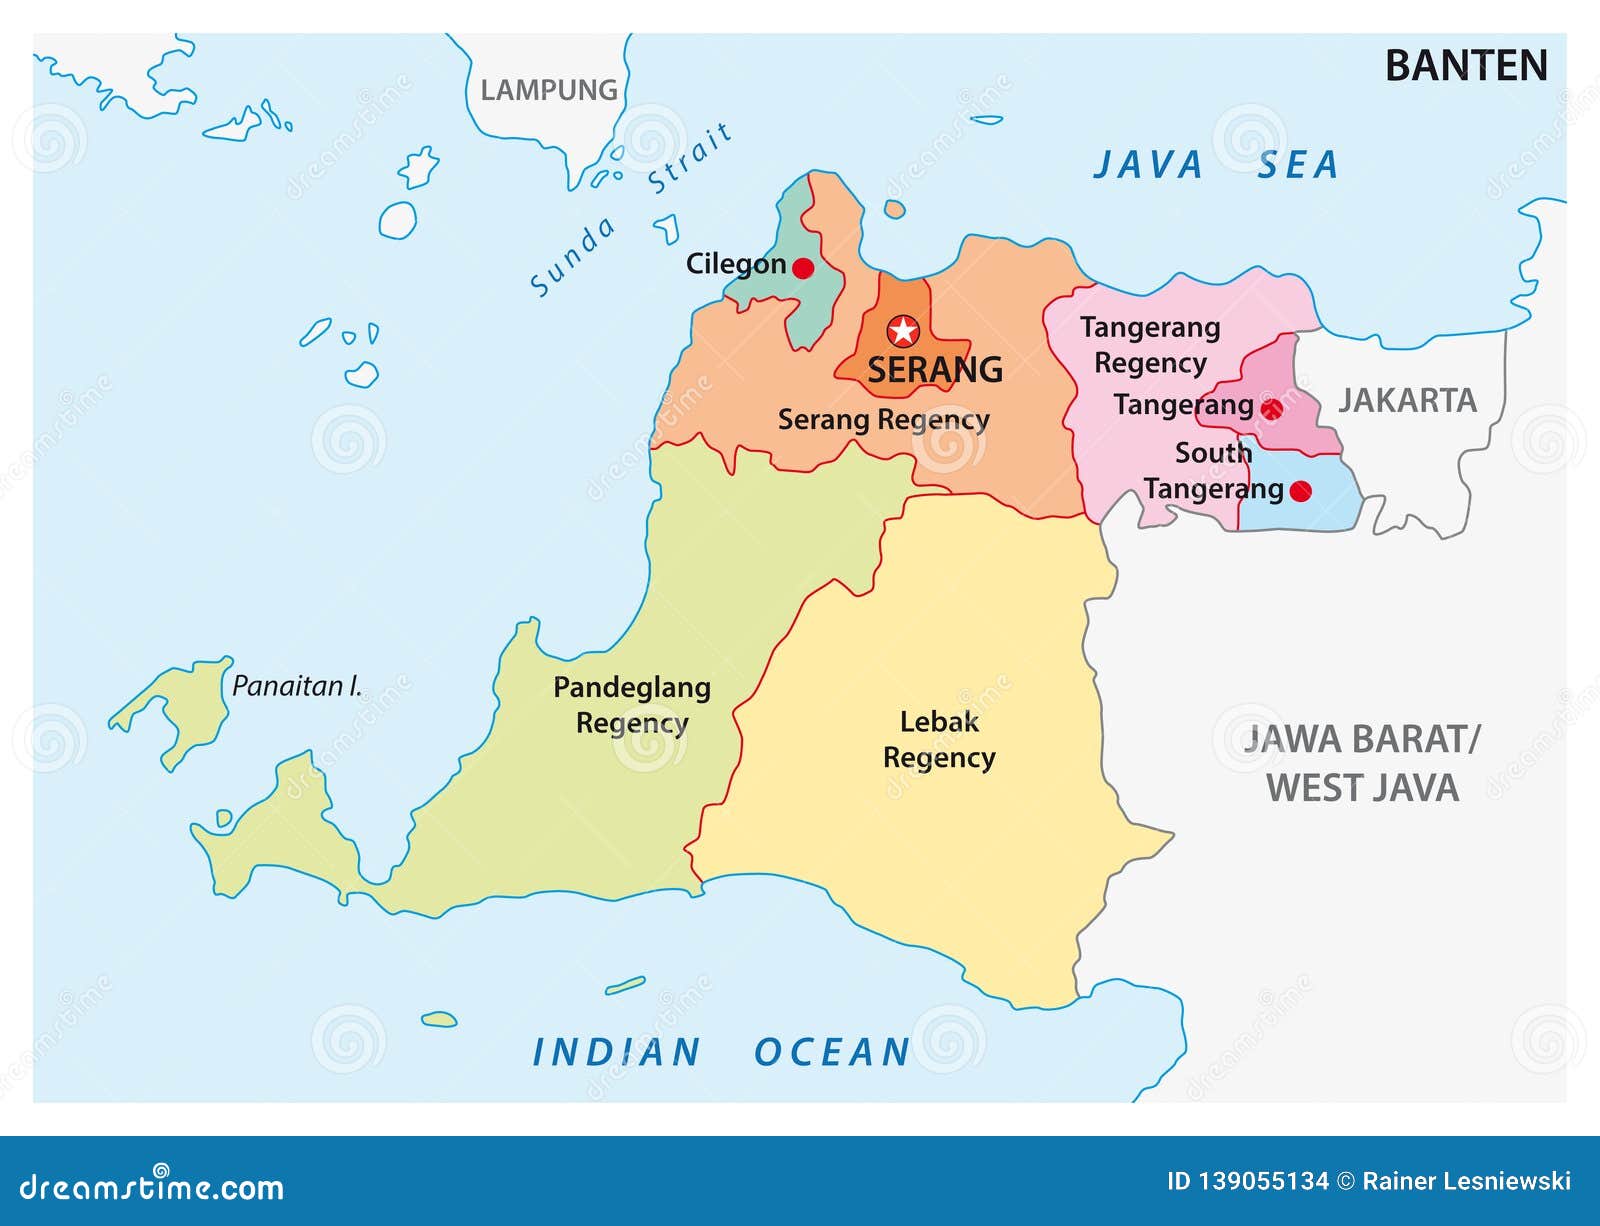 Peta Banten  Vector Png Doni Gambar